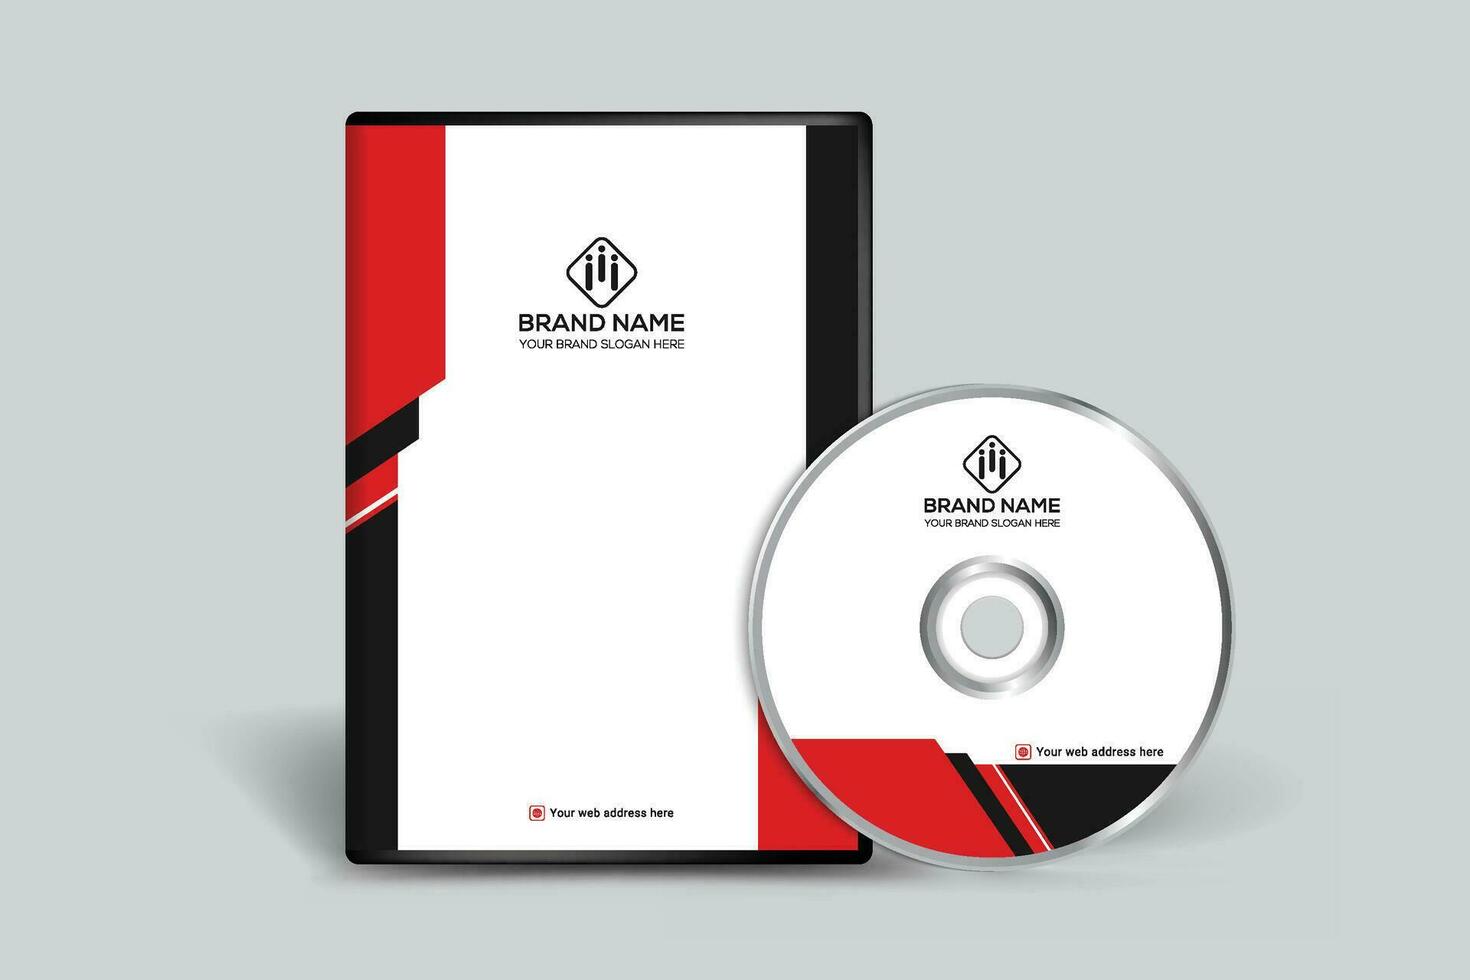 korporativ rot und schwarz Farbe DVD Startseite Design vektor